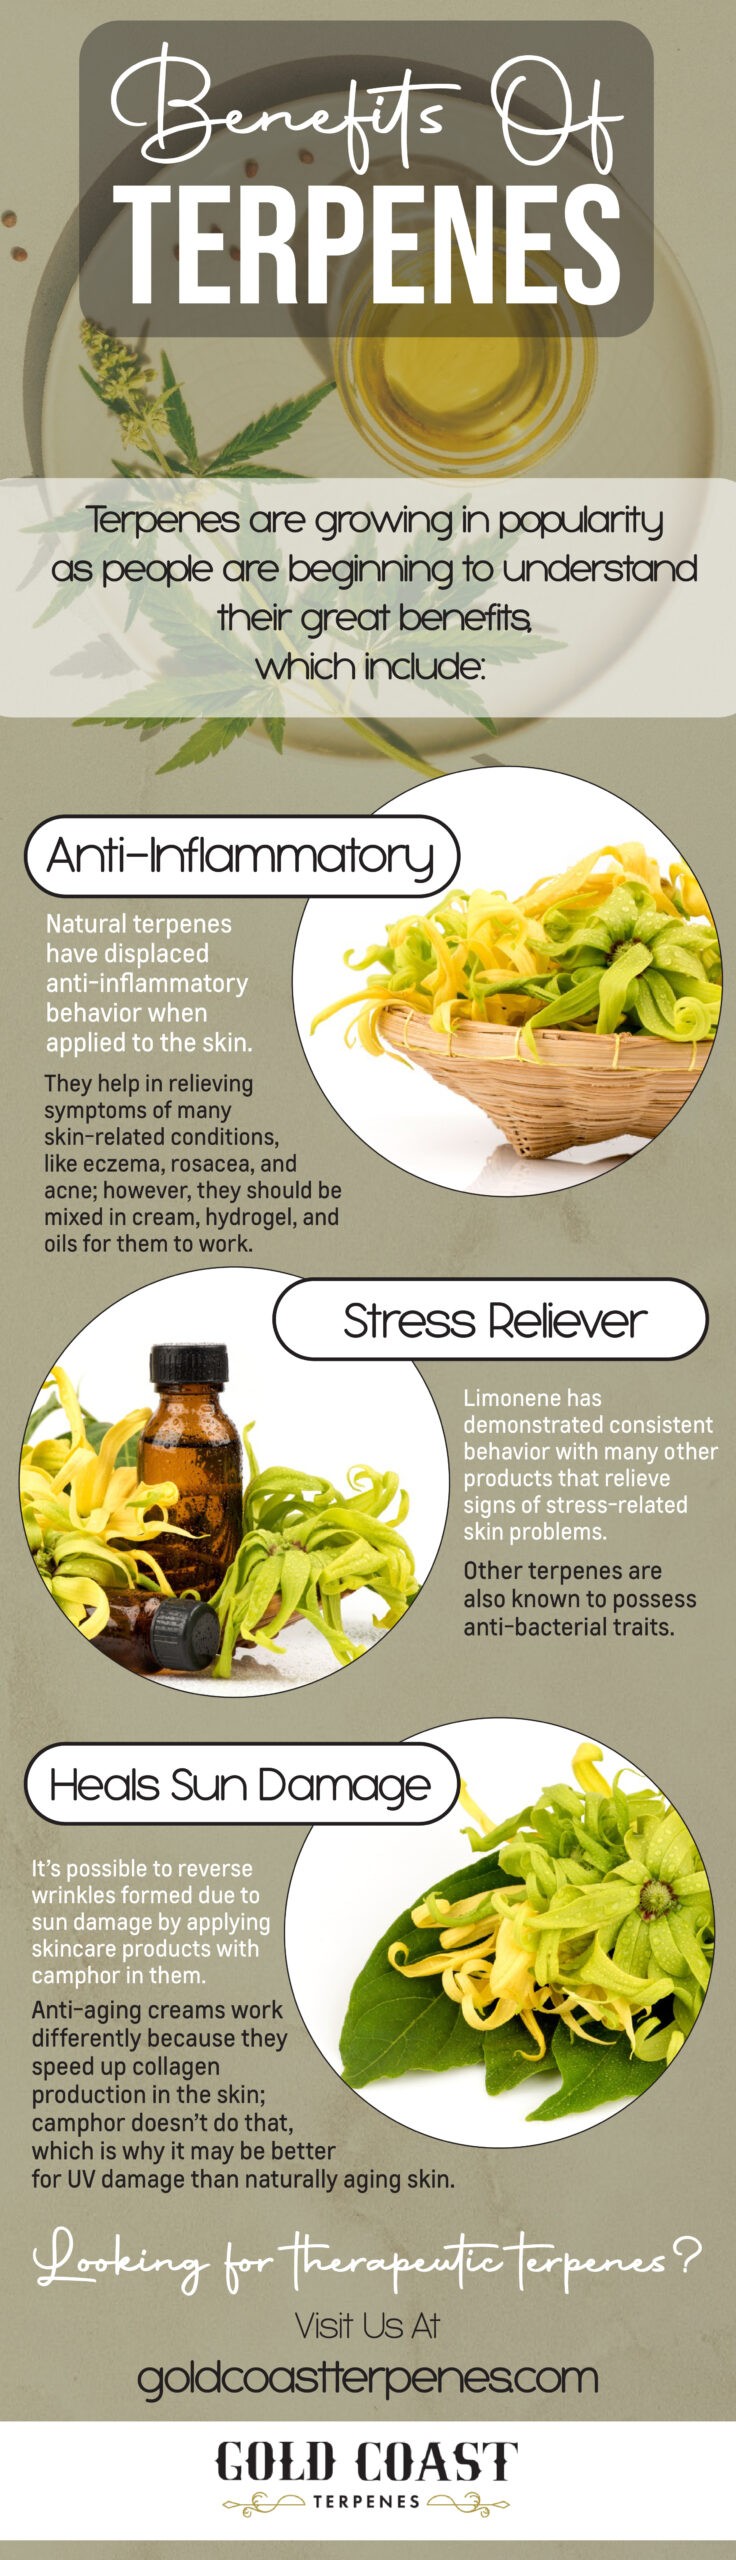 Benefits of terpenes